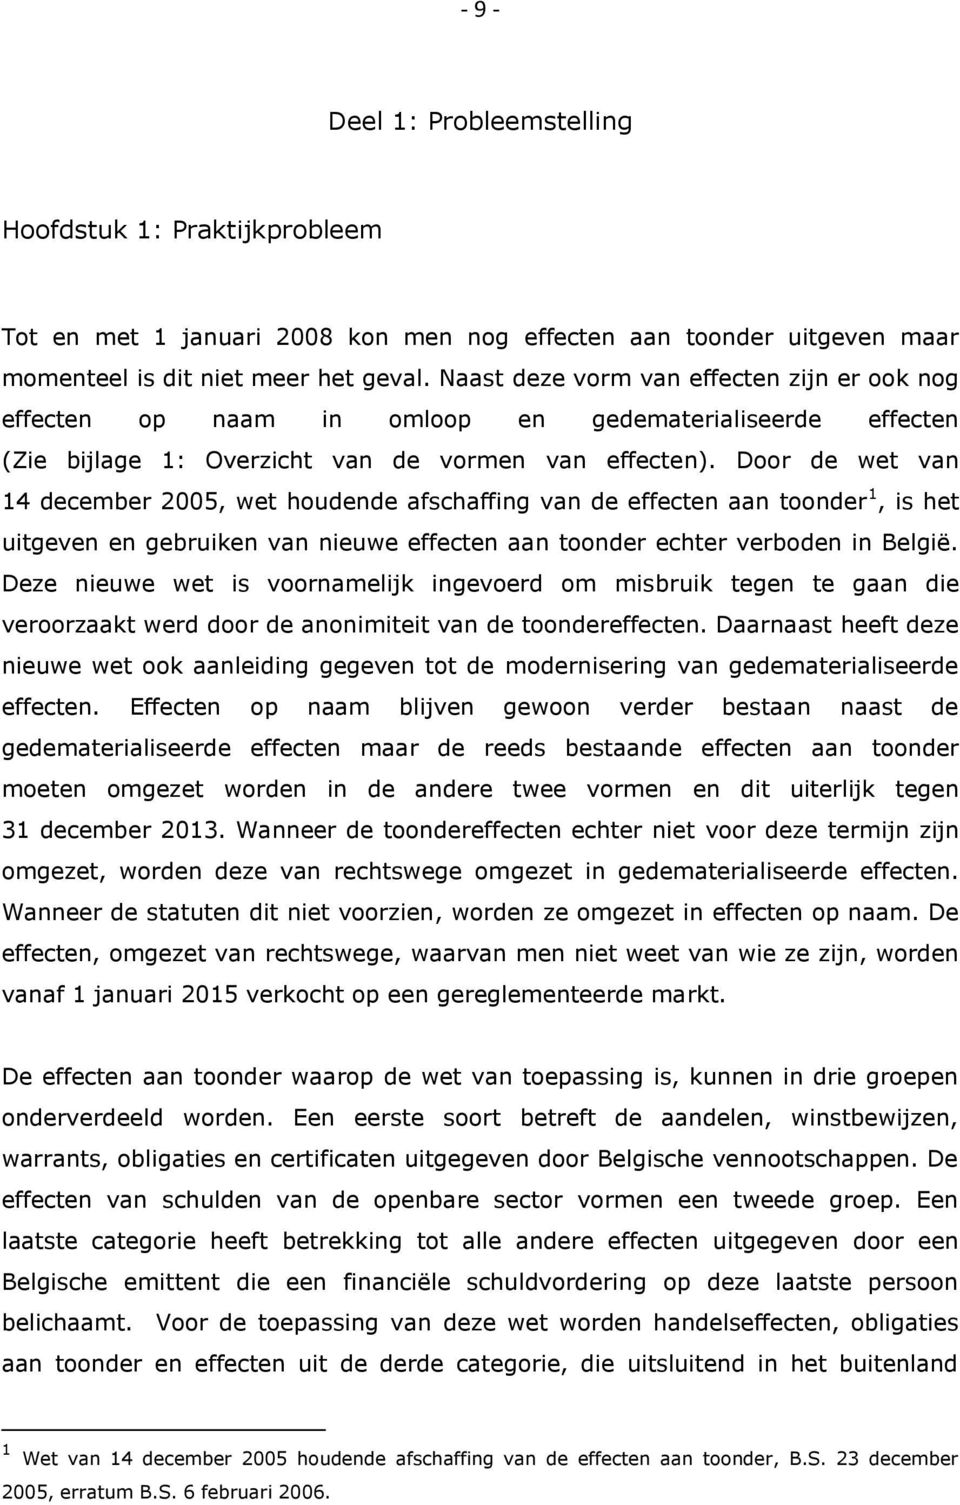 Door de wet van 14 december 2005, wet houdende afschaffing van de effecten aan toonder 1, is het uitgeven en gebruiken van nieuwe effecten aan toonder echter verboden in België.